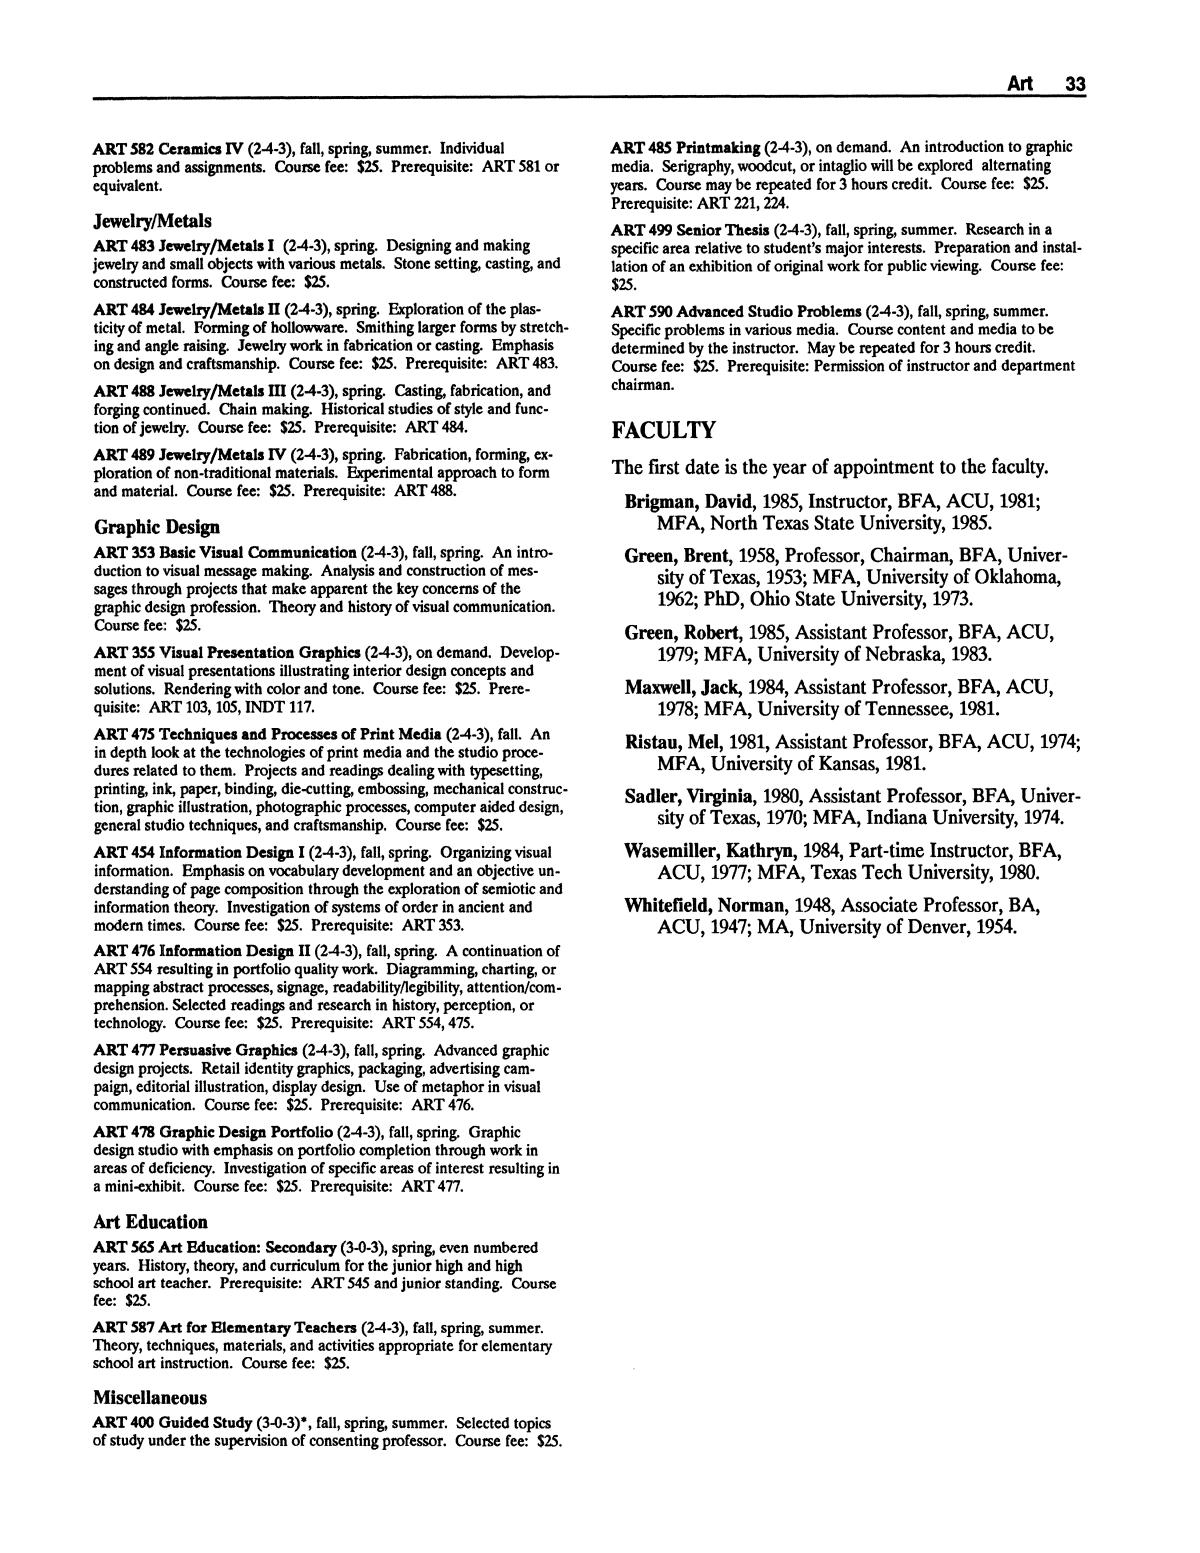 Catalog of Abilene Christian University, 1988-1989
                                                
                                                    33
                                                